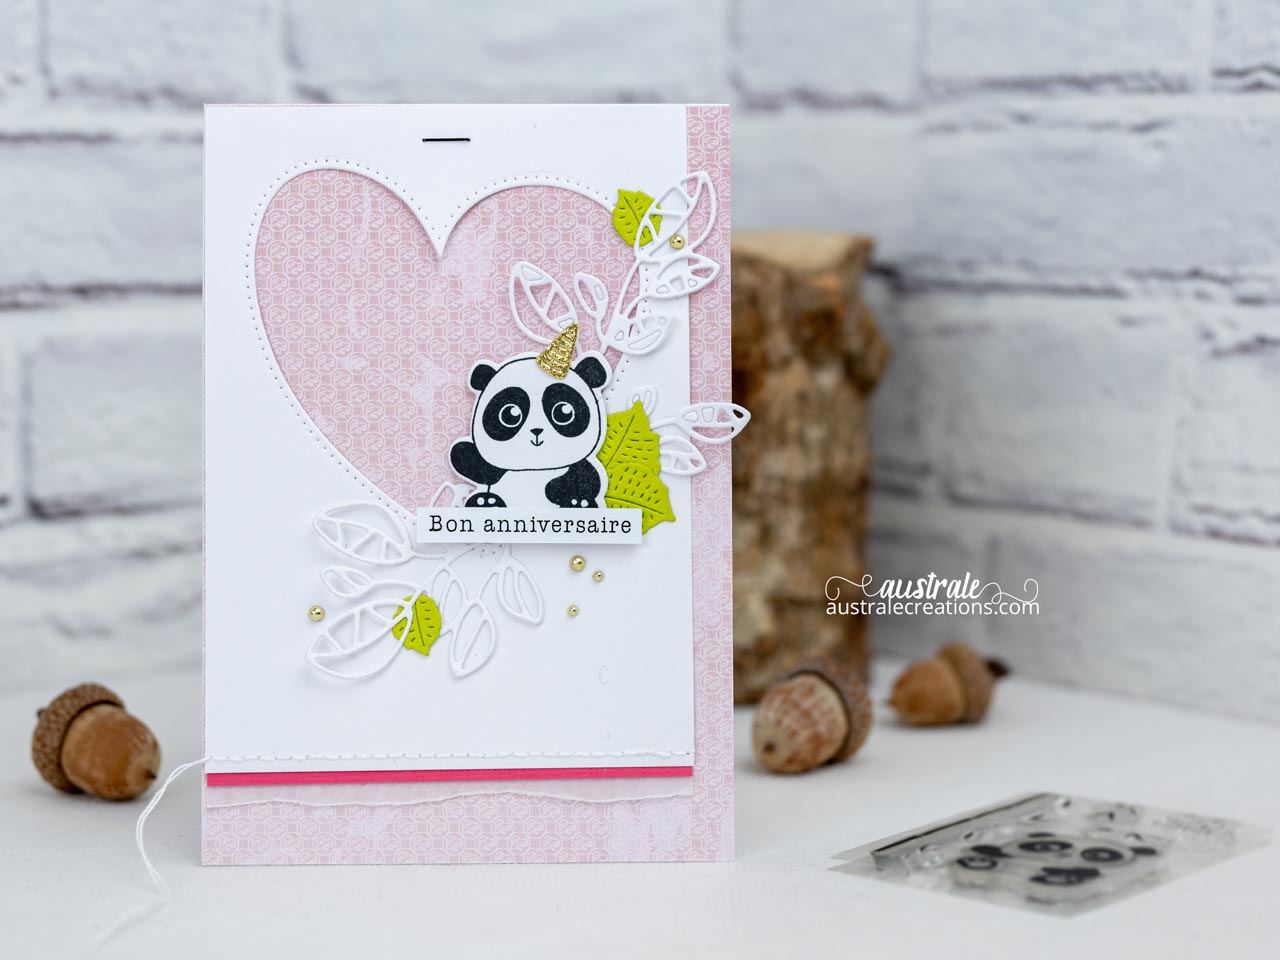 Création d'une carte d'anniversaire pour petite fille avec un adorable panda de 4enscrap, feuillages, coeur et fond rose.